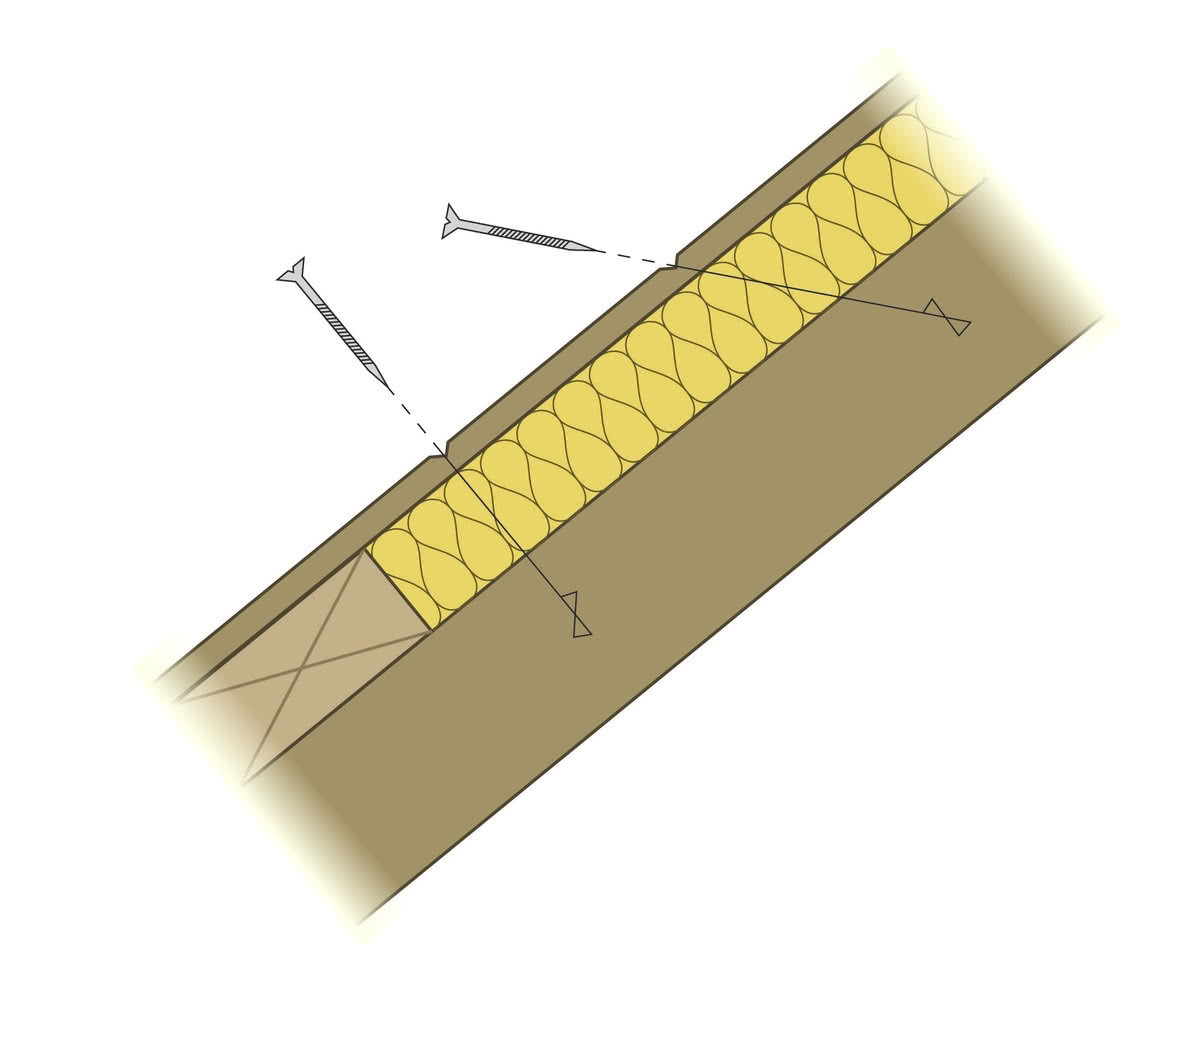 Sztywne płyty można układać na krokwiach od strony zewnętrznej